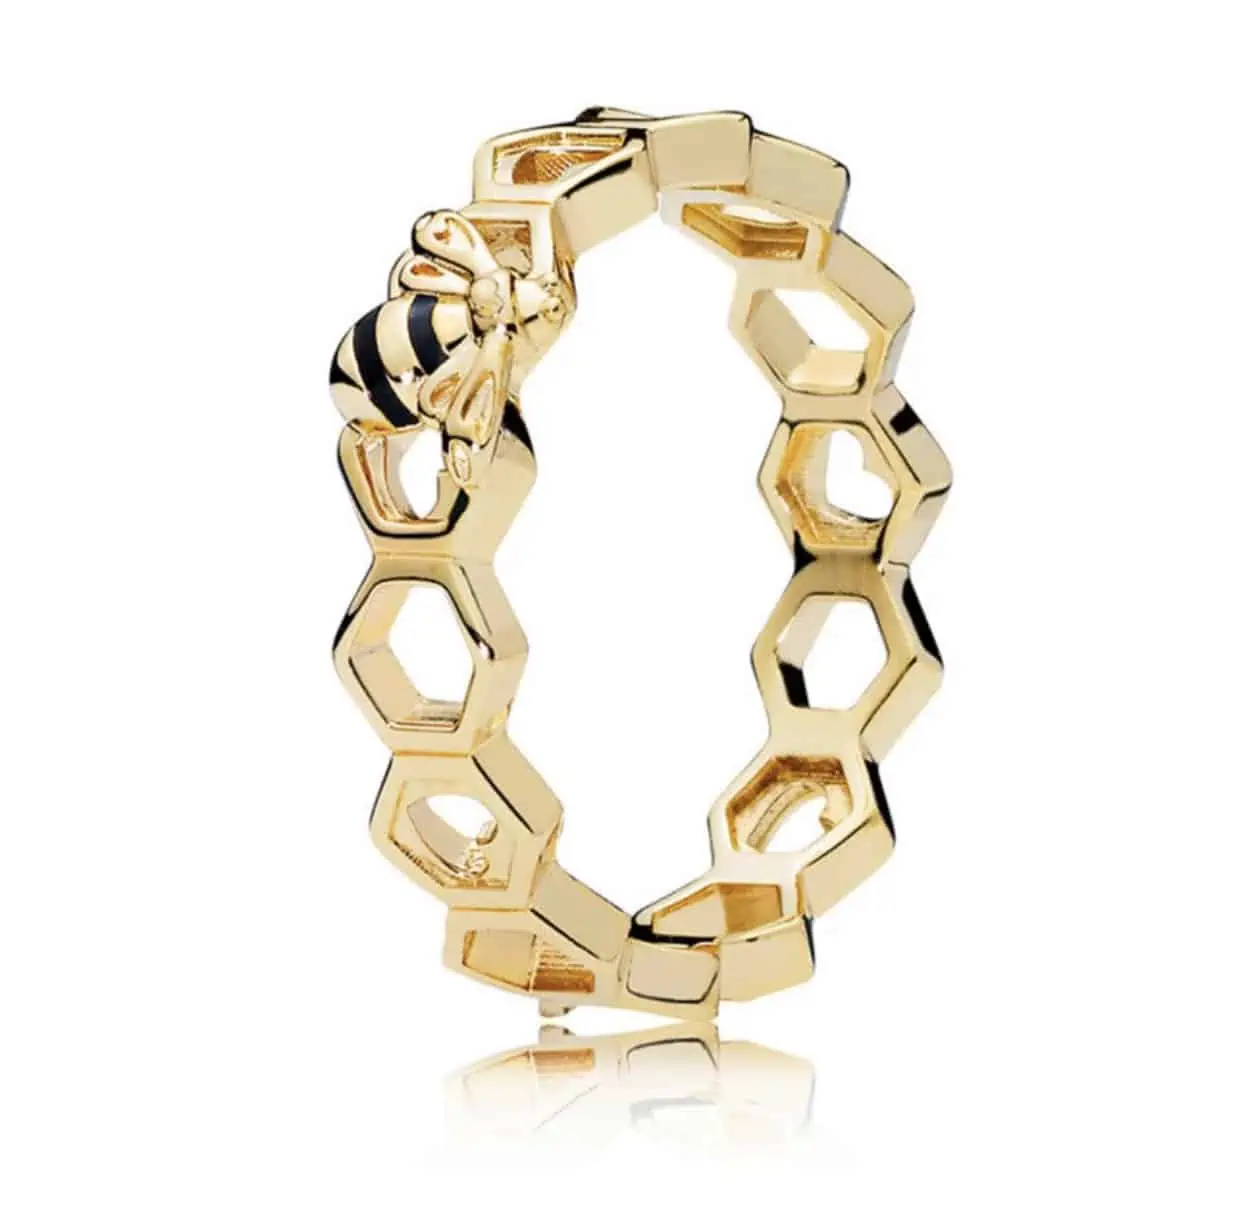 Product Afbeelding Vooraanzicht van onze prachtige ring bij. Deze ring is gemaakt van 925 sterling zilver met een laagje 14 karaat goud. De ring is opengewerkt in de vorm van een honinggraat. Bovenop zit een bij met zwarte emaille en goud.